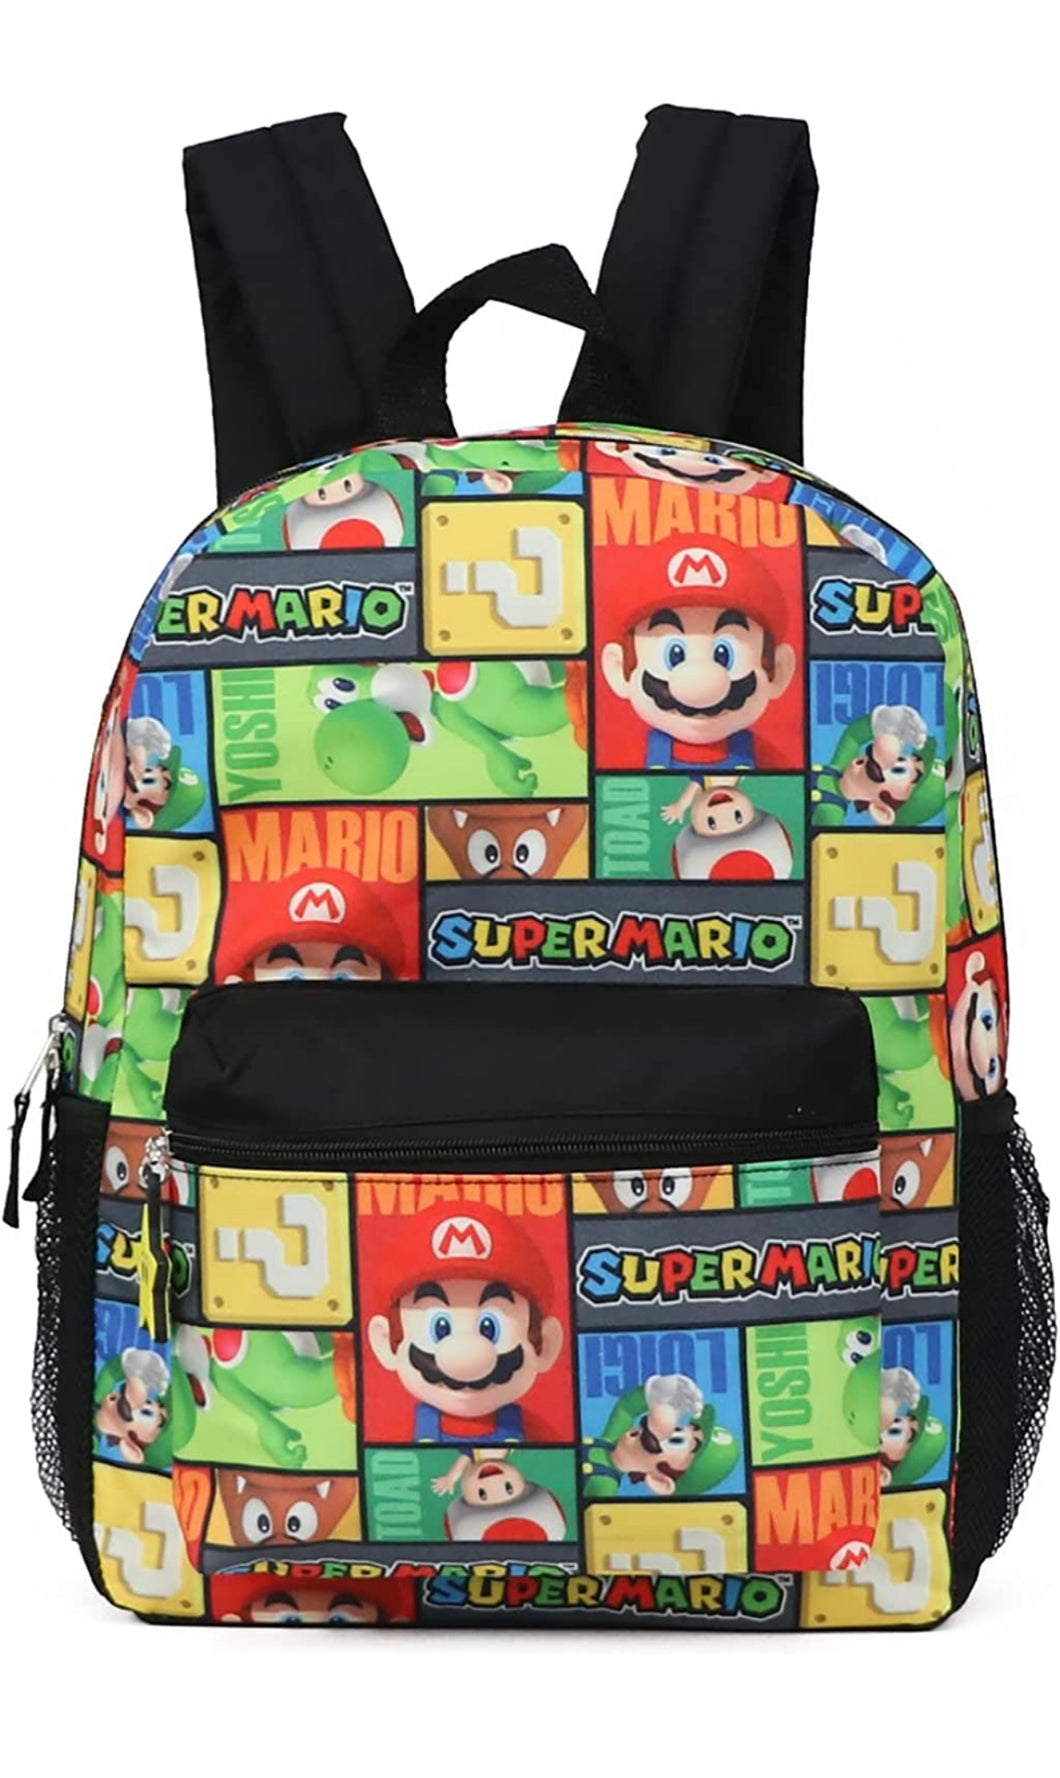 Súper Mario Backpack